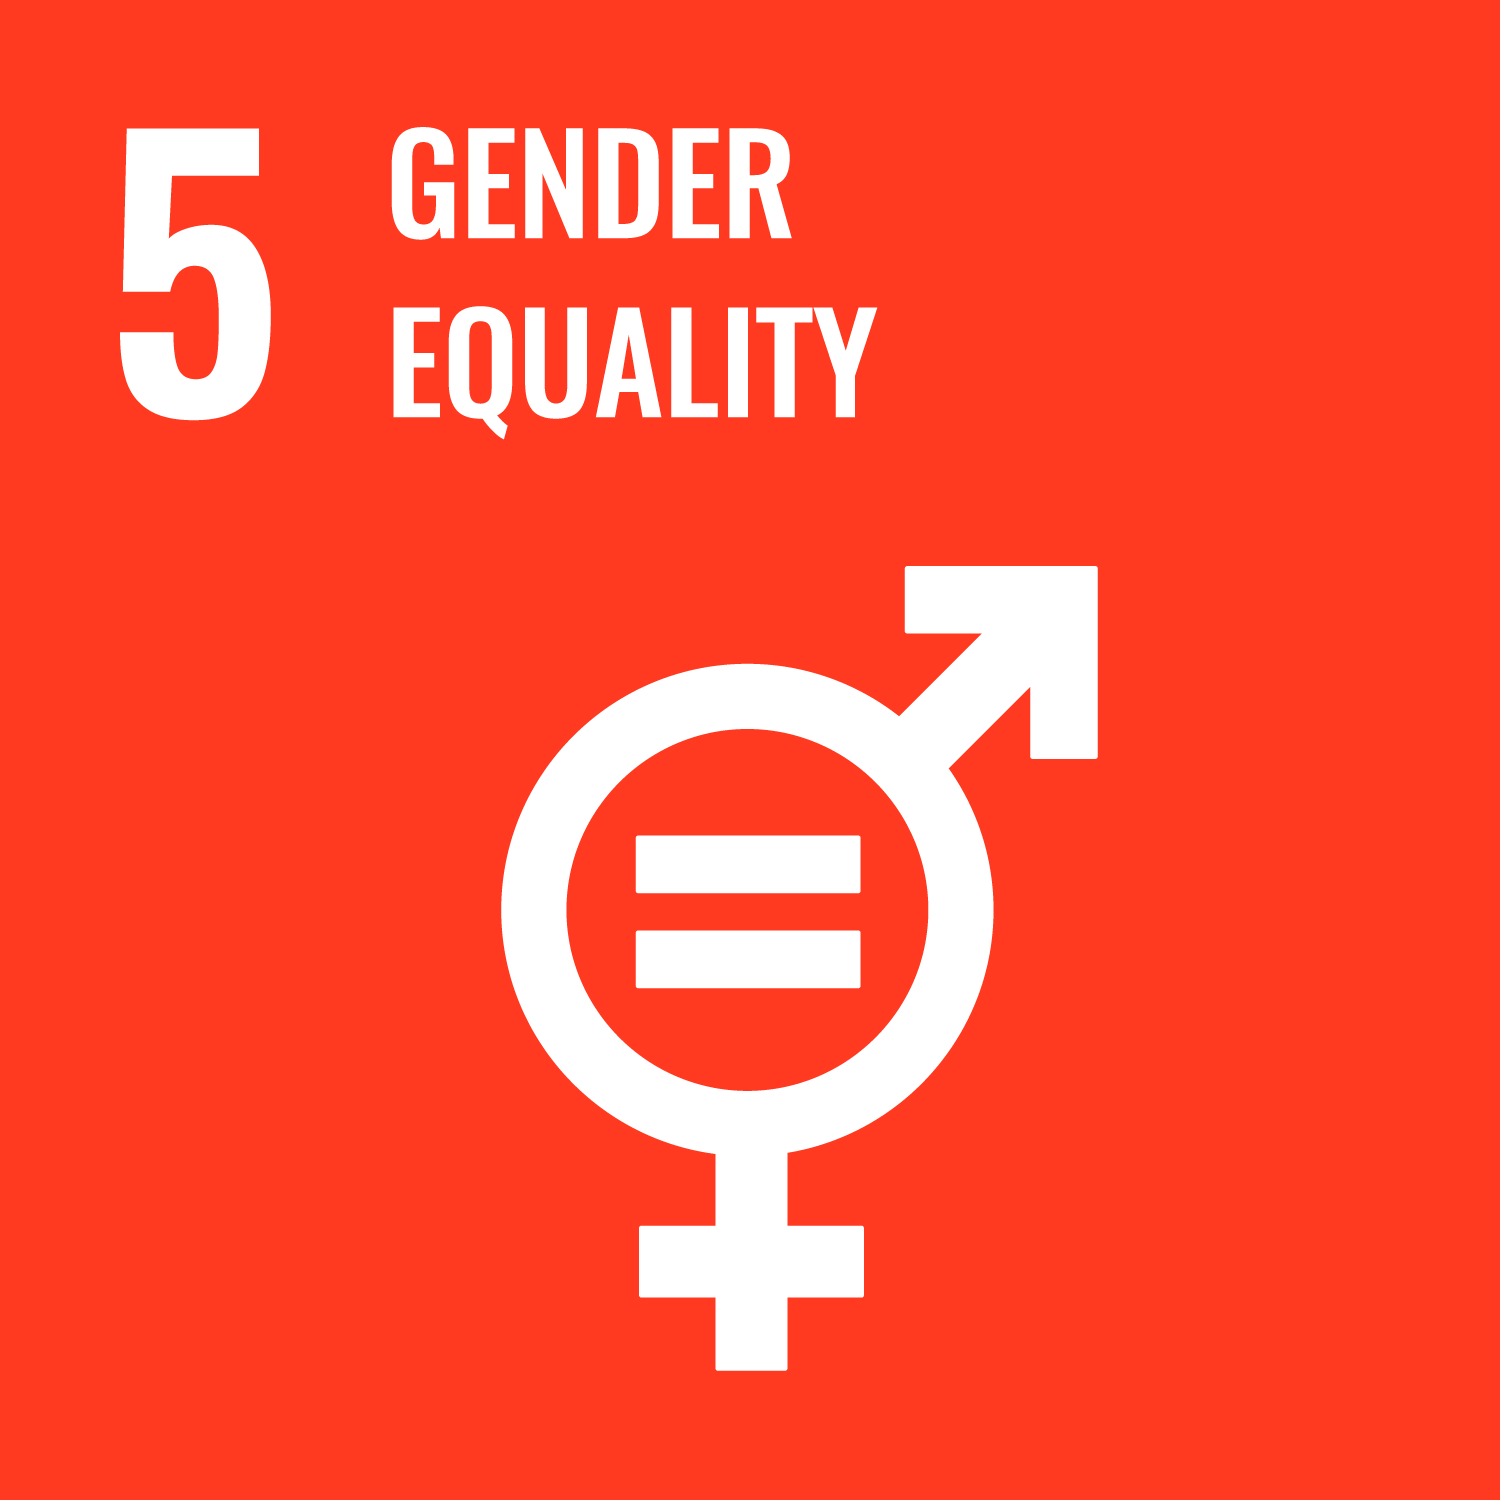 Goal number 5:  Gender equality